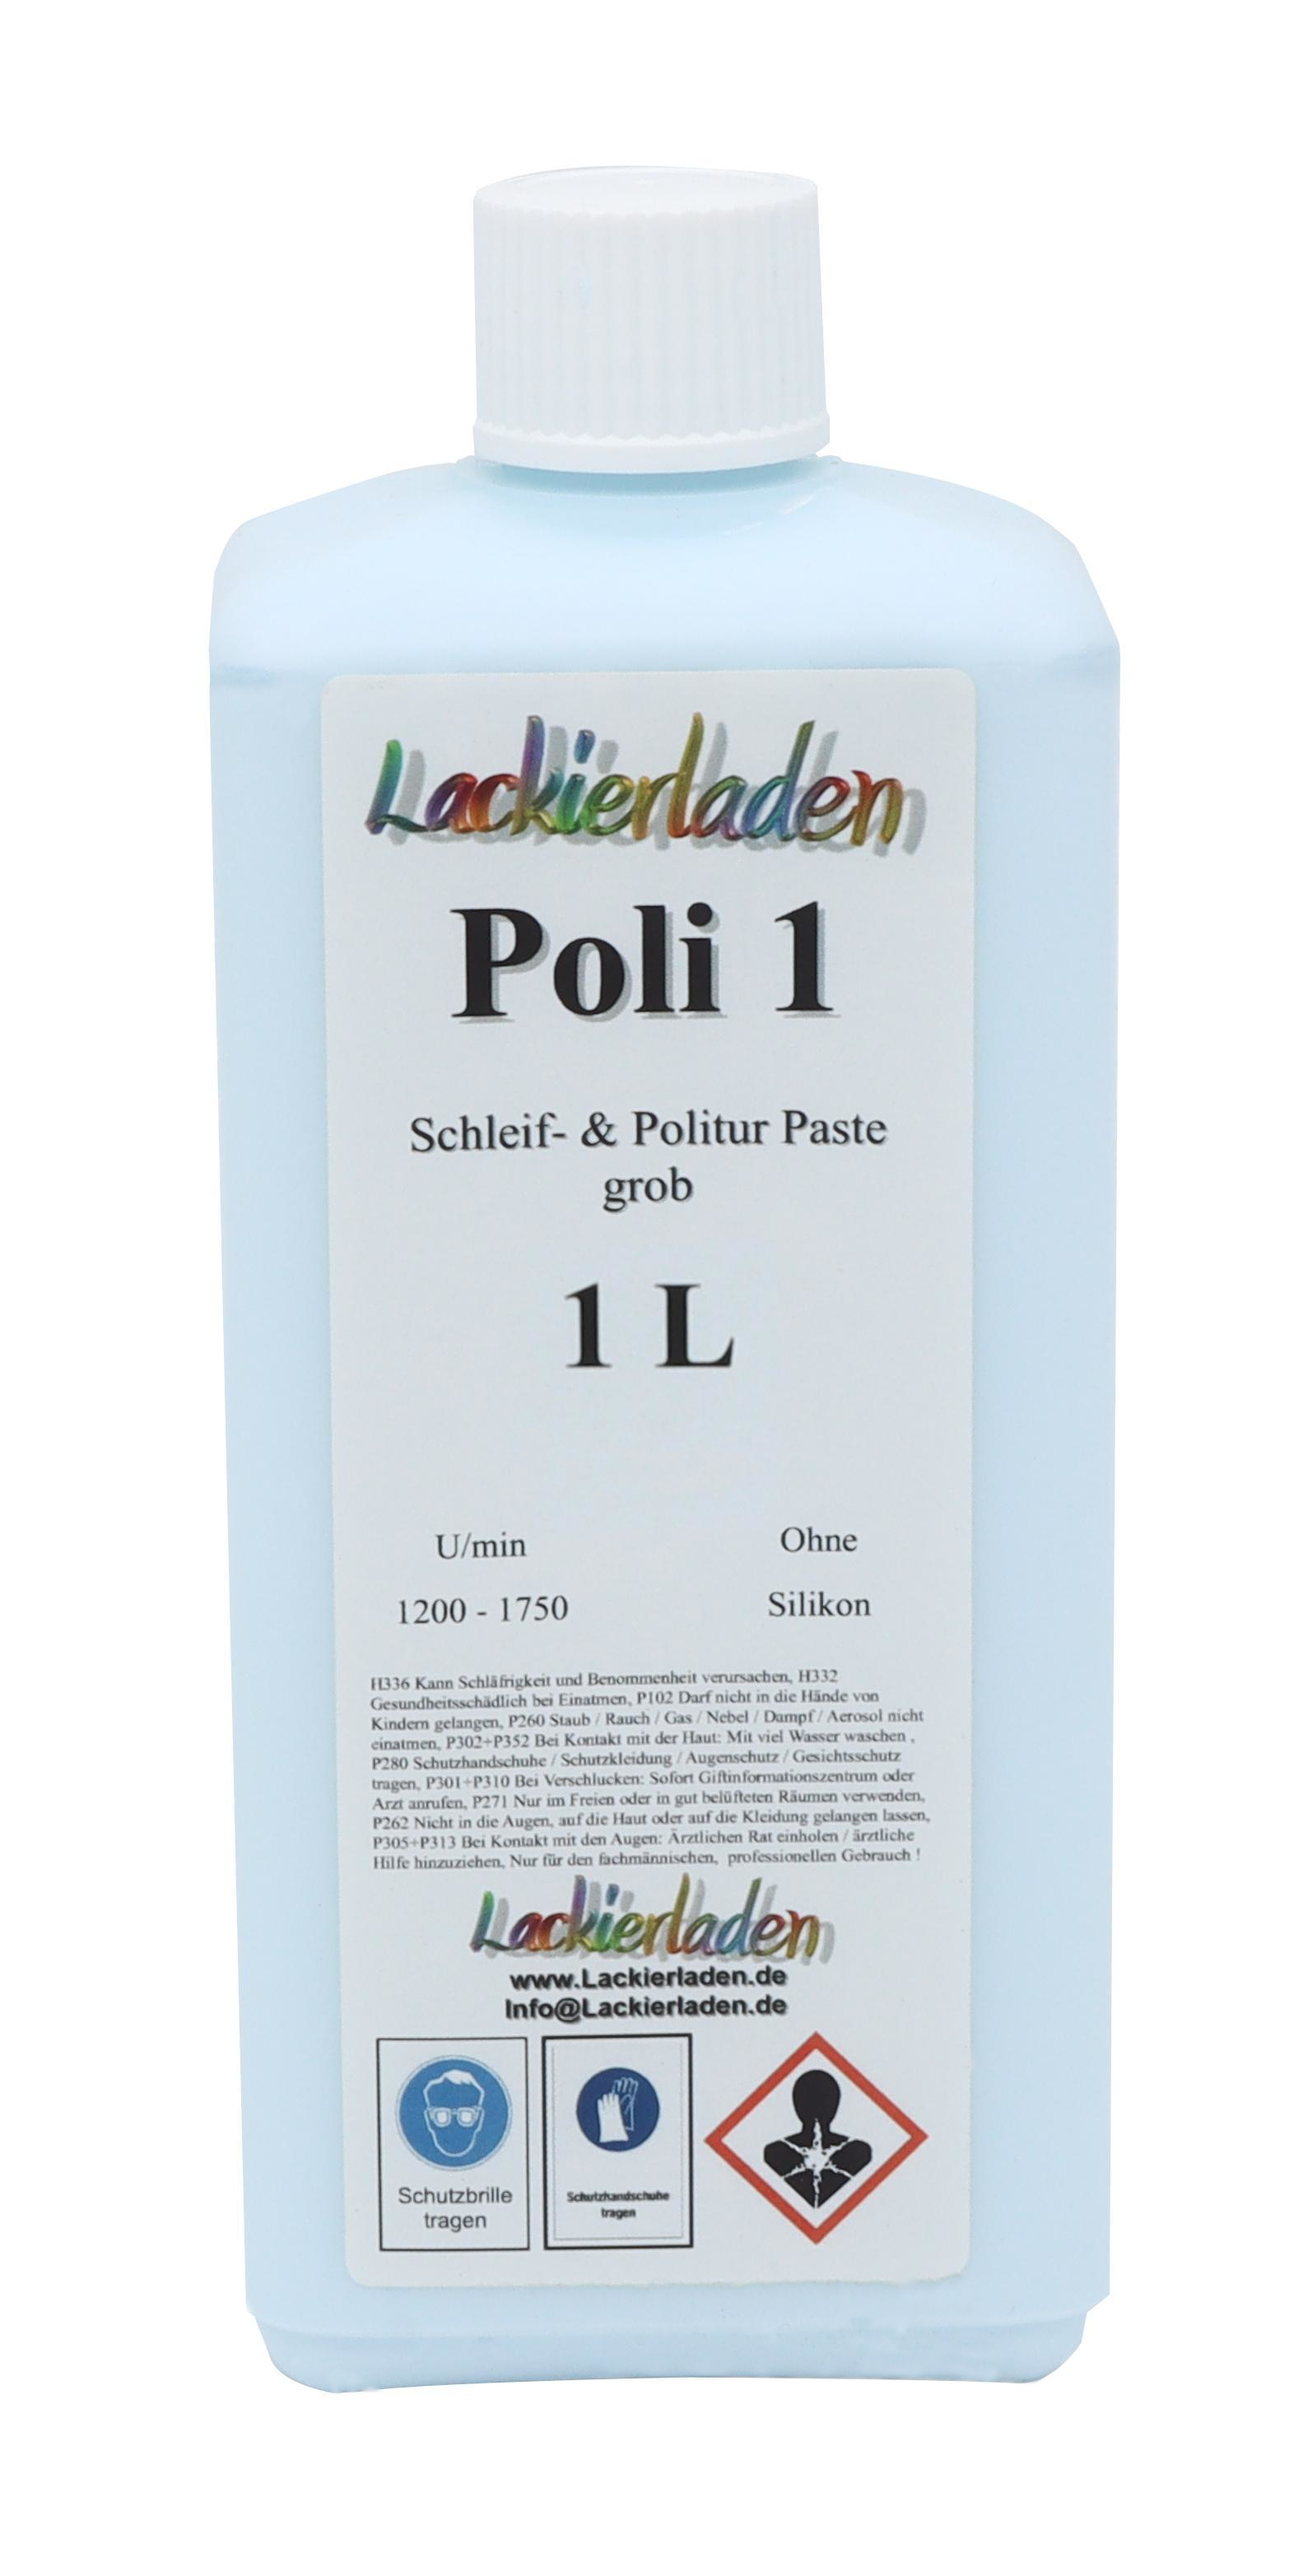 Poli 1 Schleif- & Politur Paste grob 1,0 L | Polierpaste Schleifpaste polieren 1L